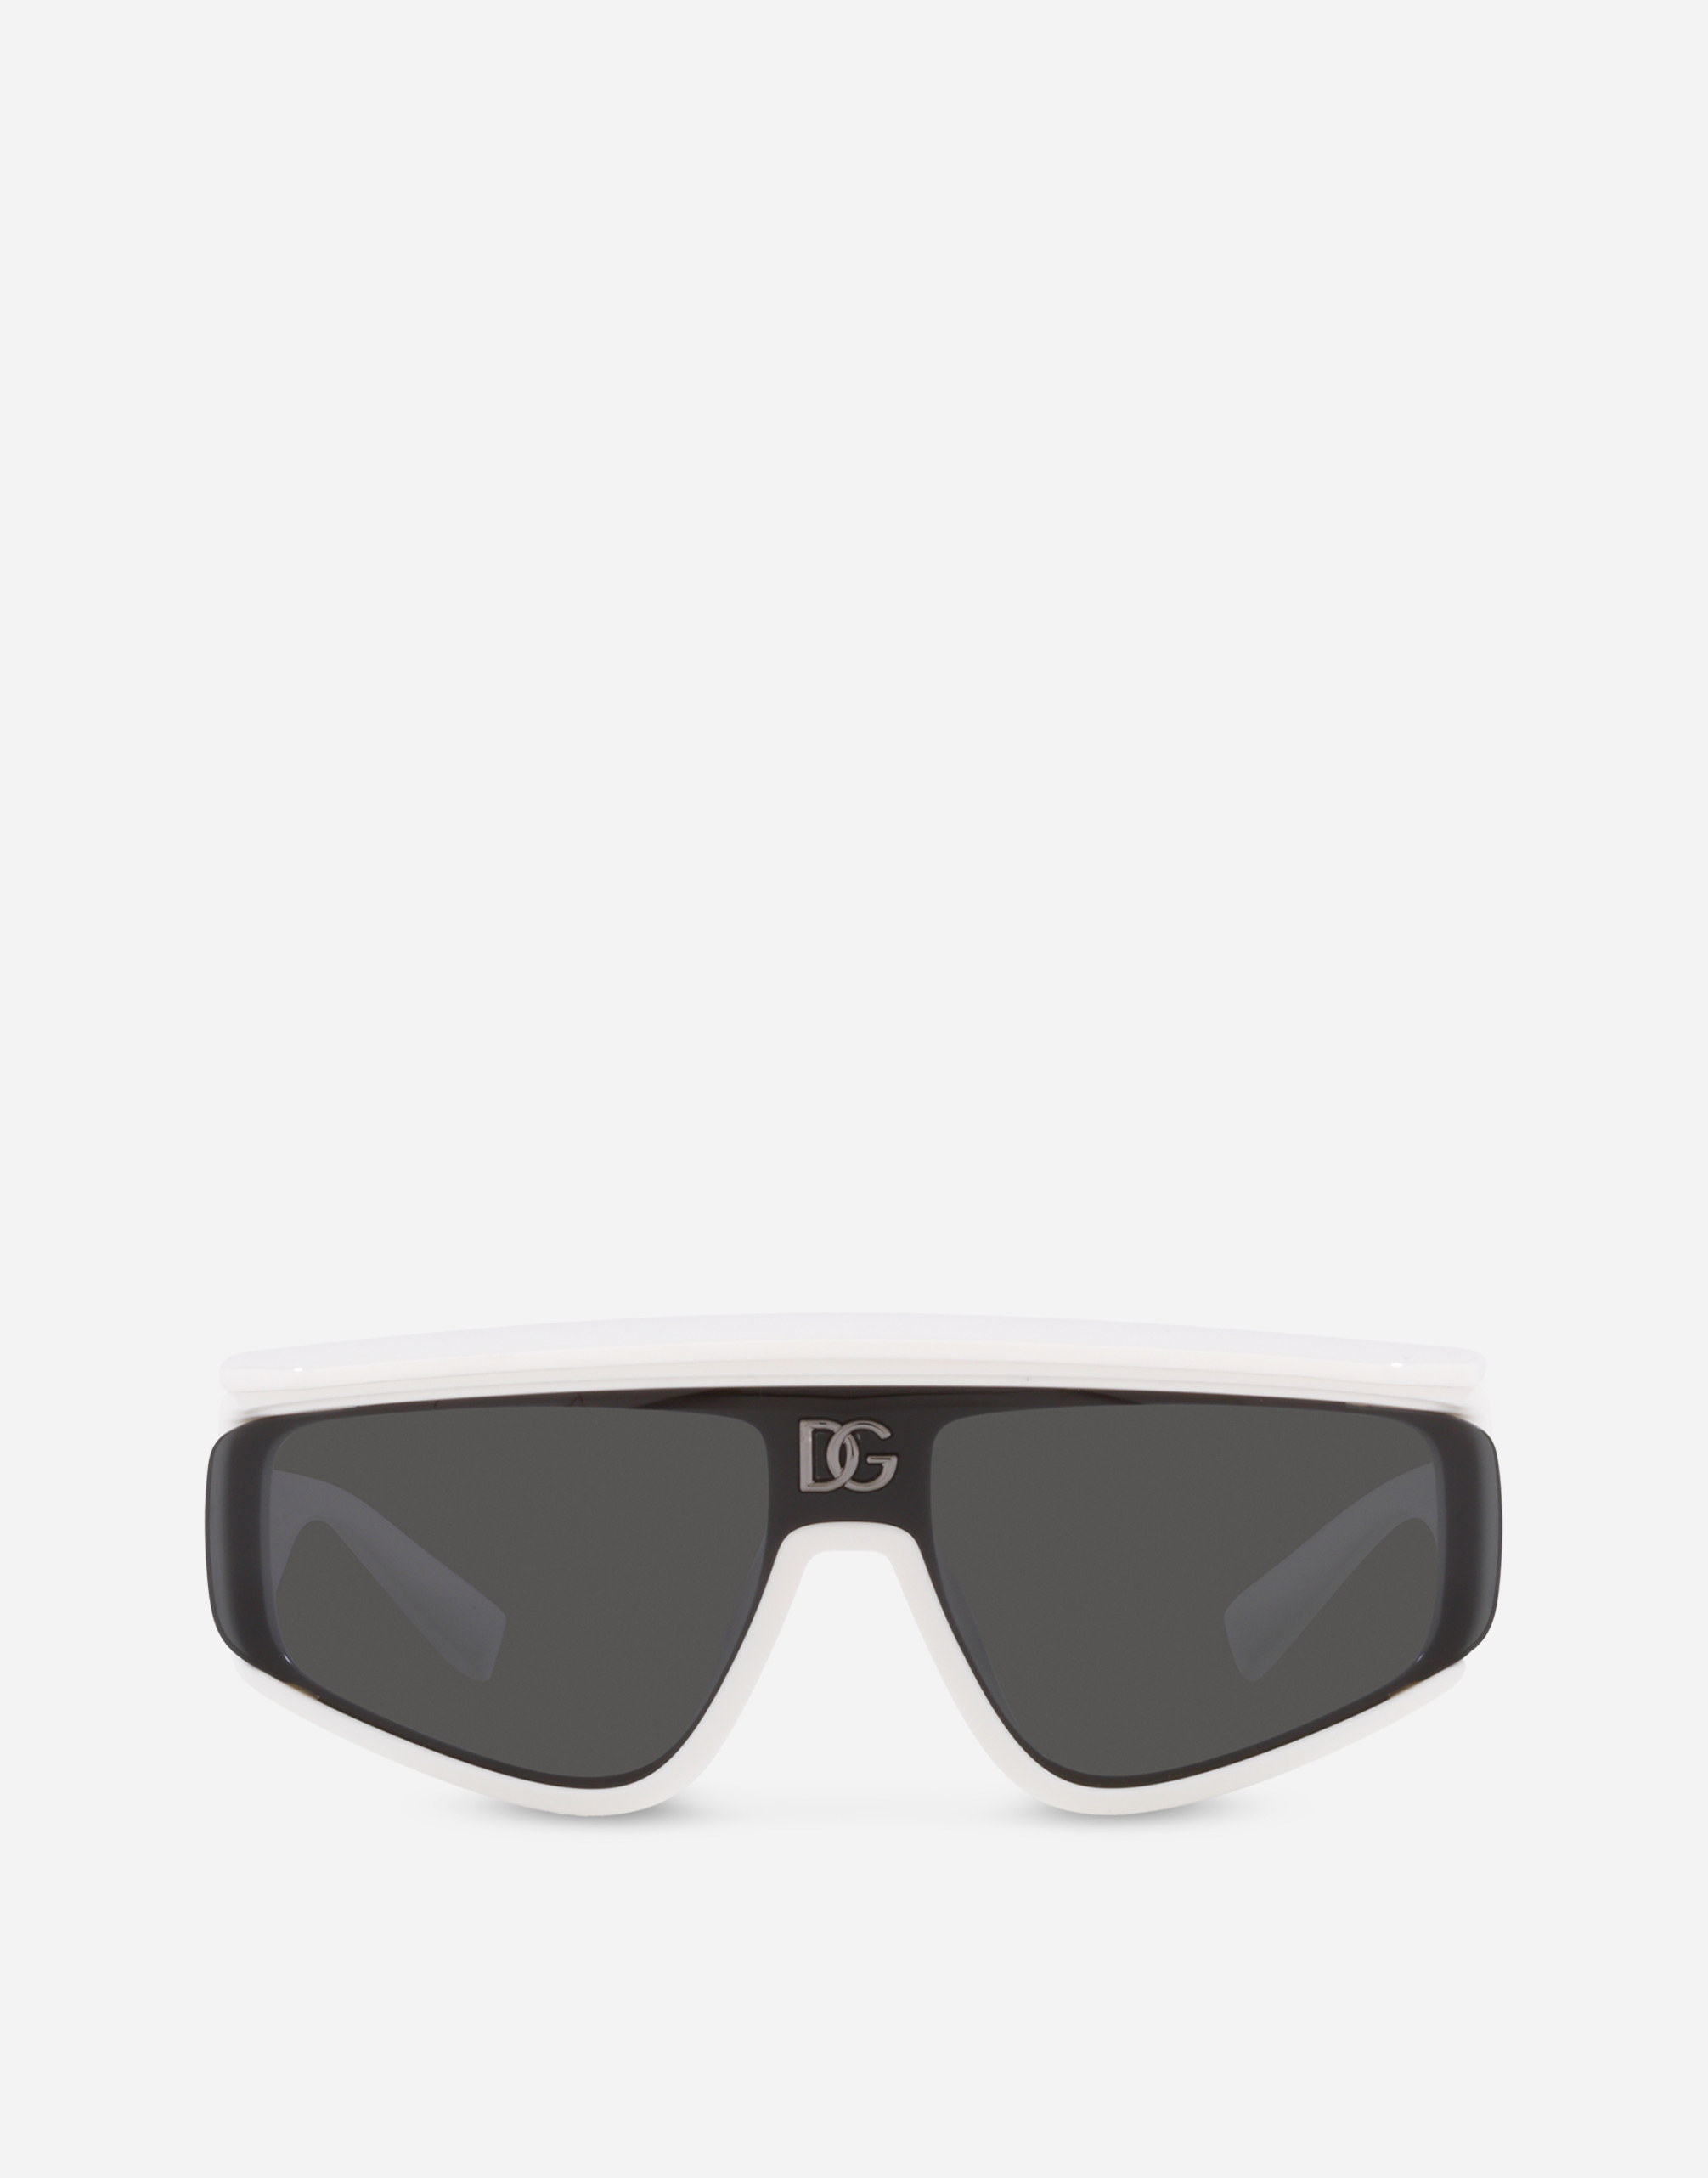 DG crossed sunglasses in White